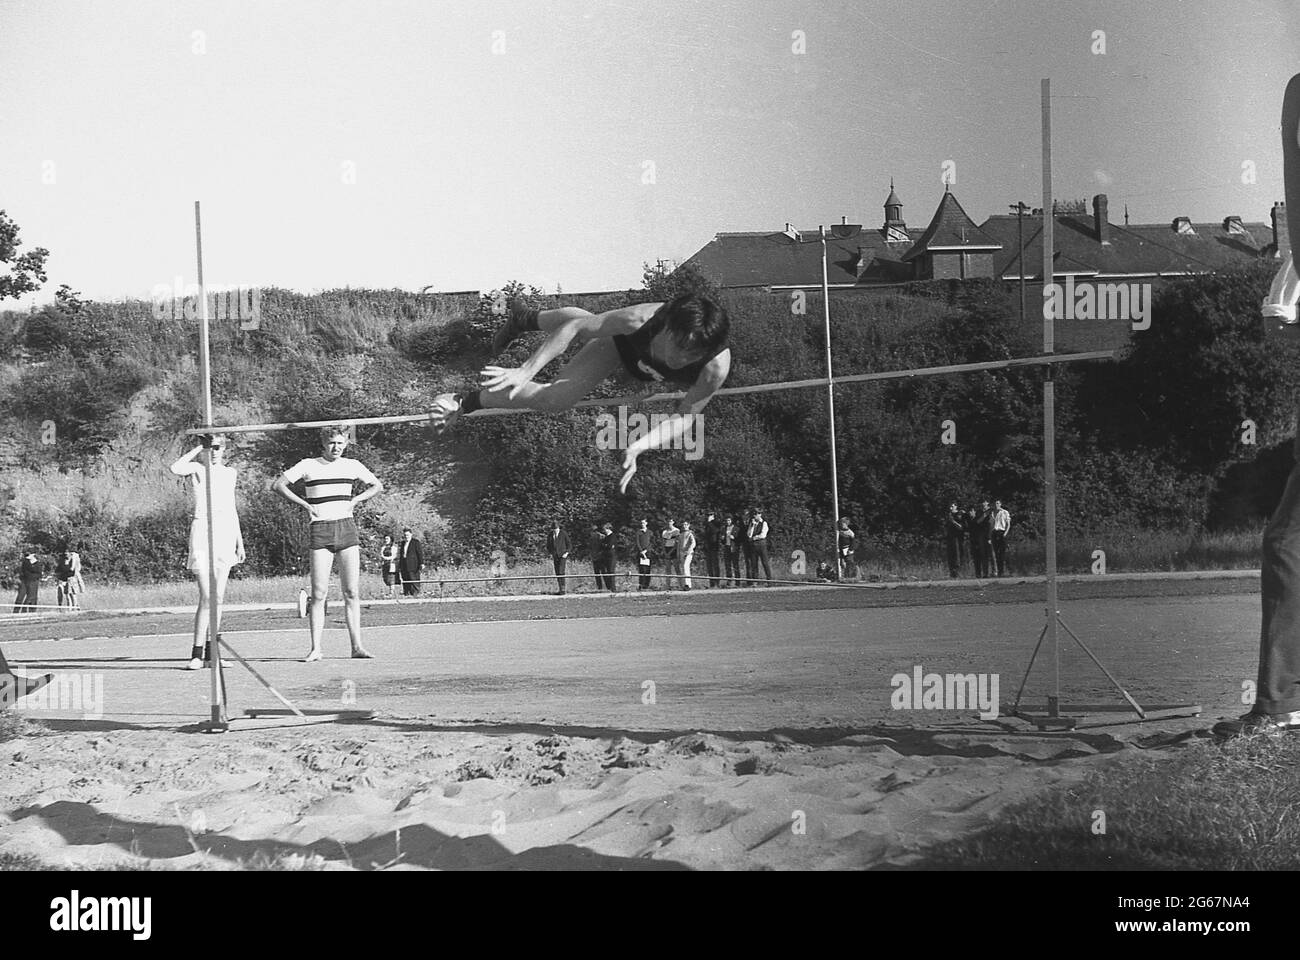 1960s, storico, atletica, giornata sportiva inter-contea, giovane maschio concorrente che rotola il suo corpo sopra la barra nel salto alto, in procinto di atterrare nel pozzo di sabbia sotto, Inghilterra, Regno Unito. Foto Stock